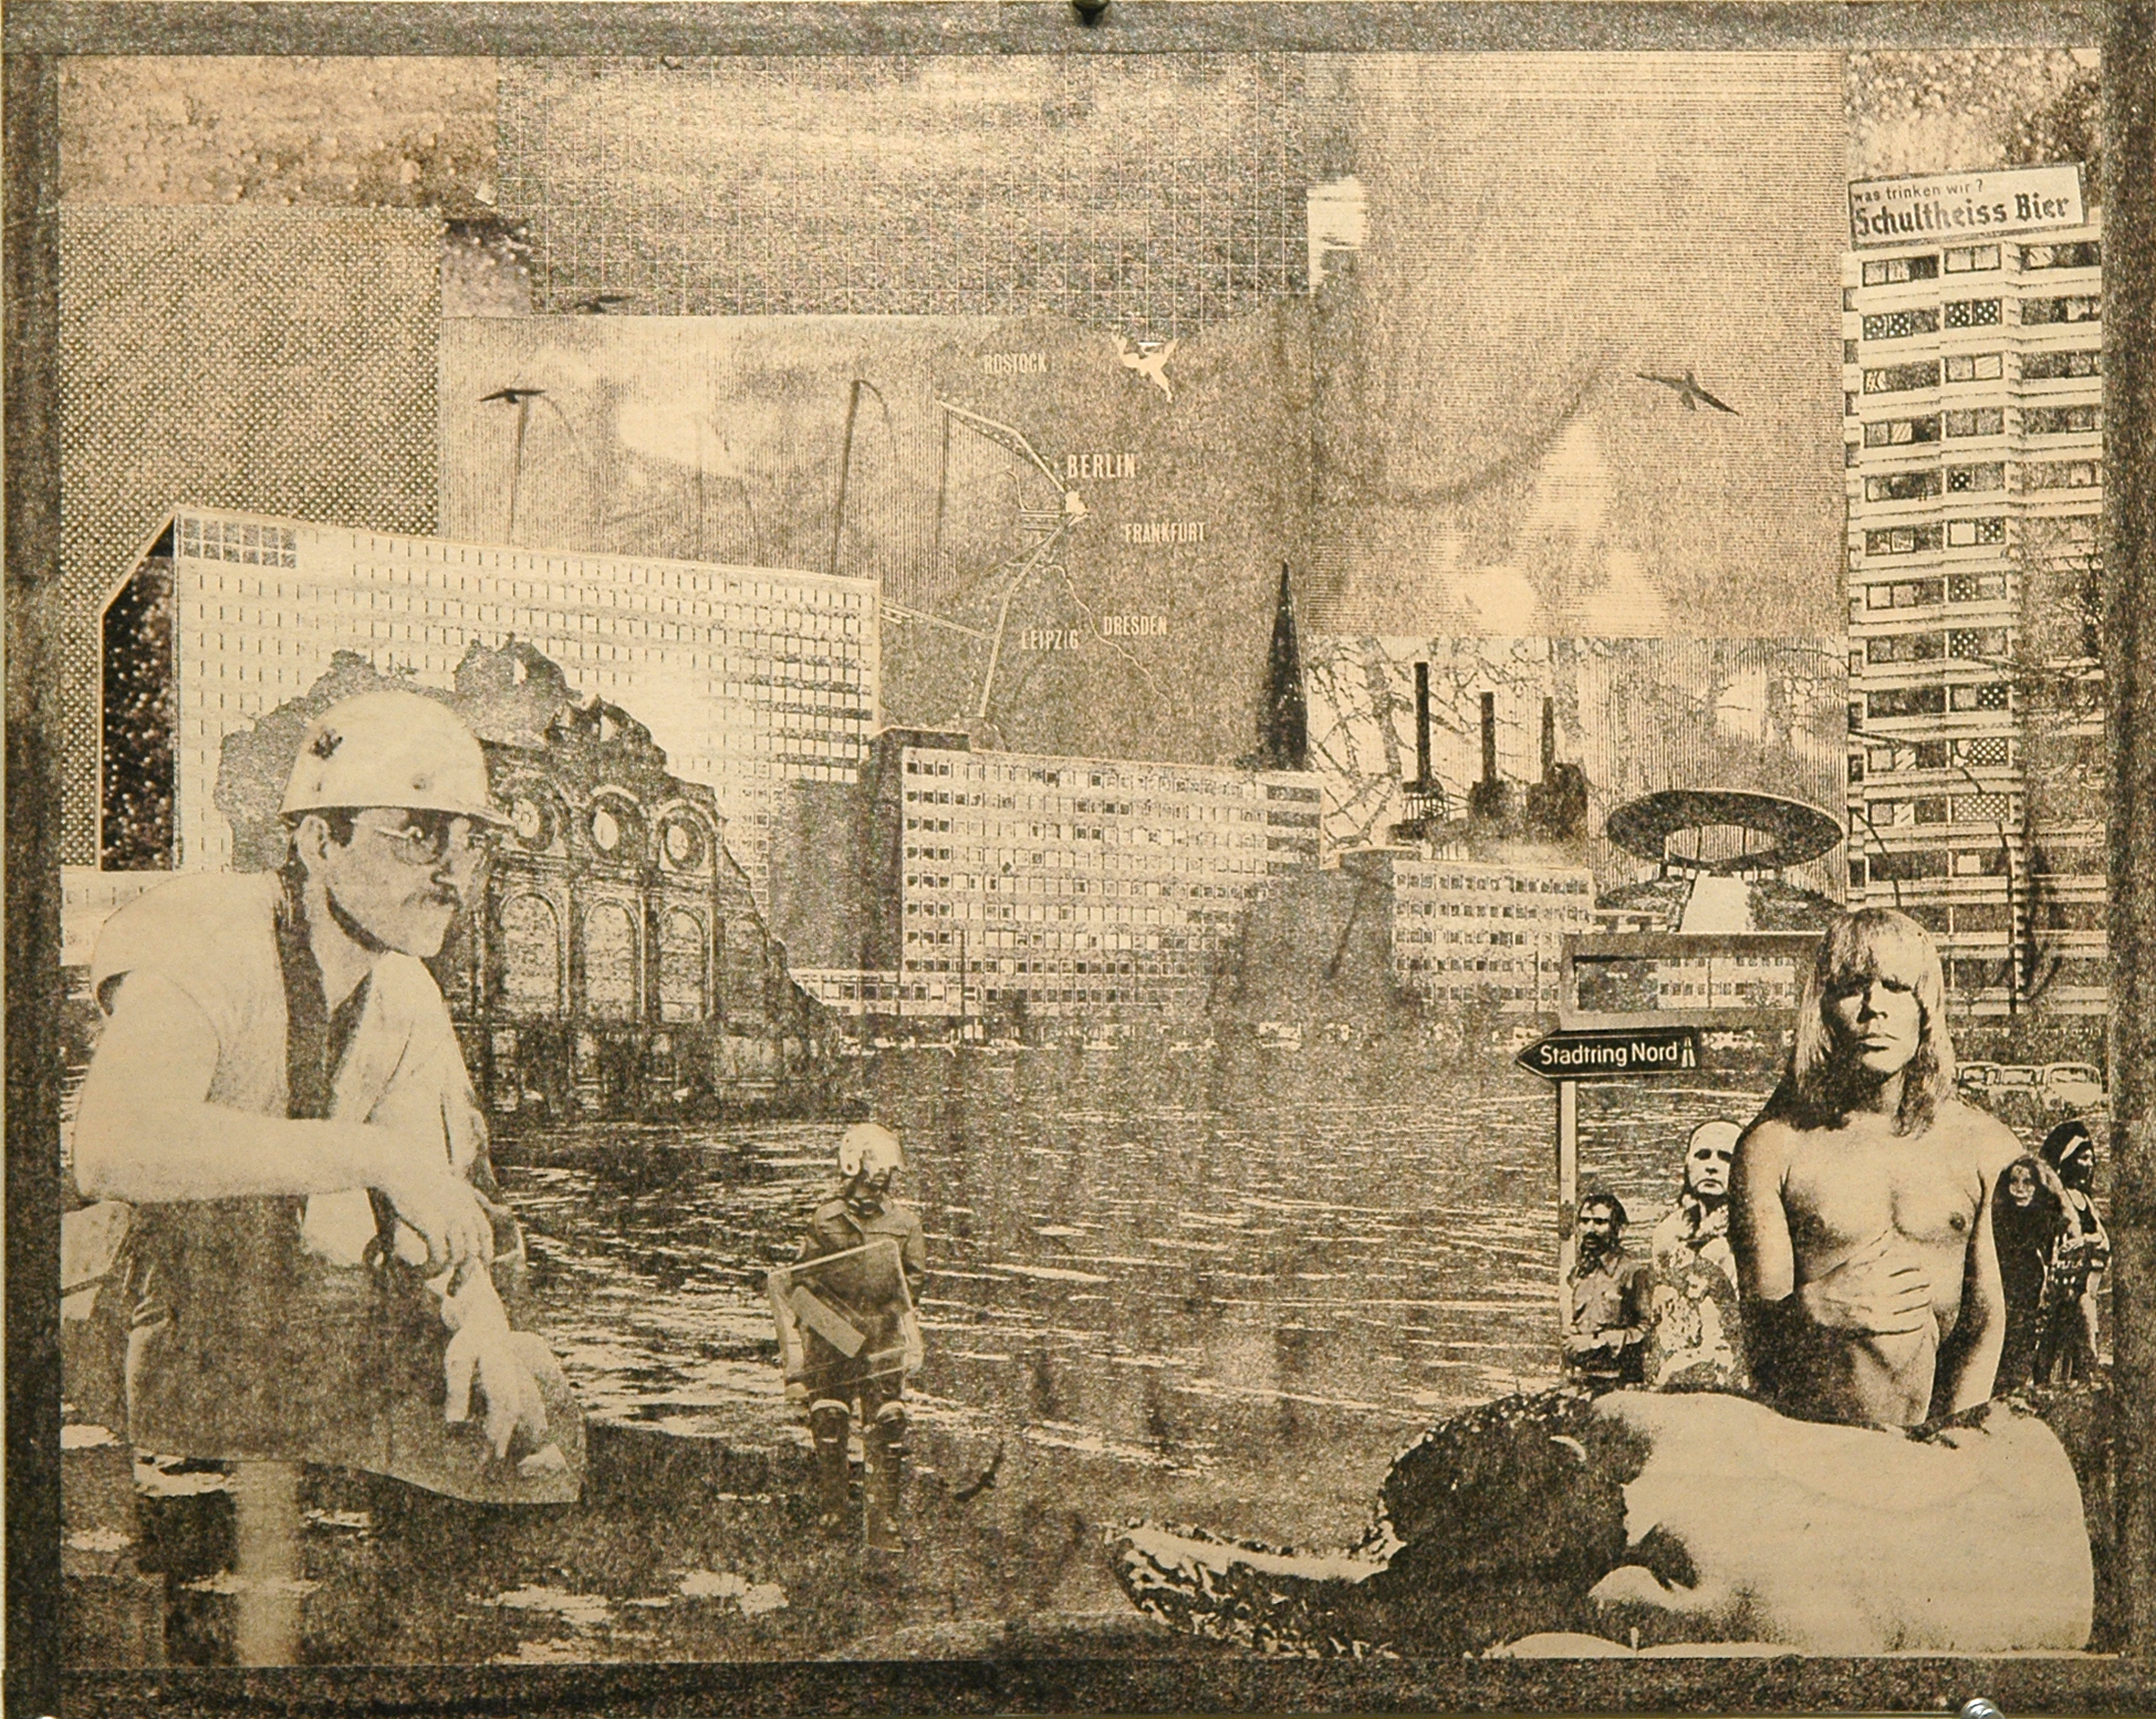   GWENAËL RATTKE   Die Stadt und ihre Seele 2 , 2012, solvent transfer and collage on museum board, 18" x 22.25" 